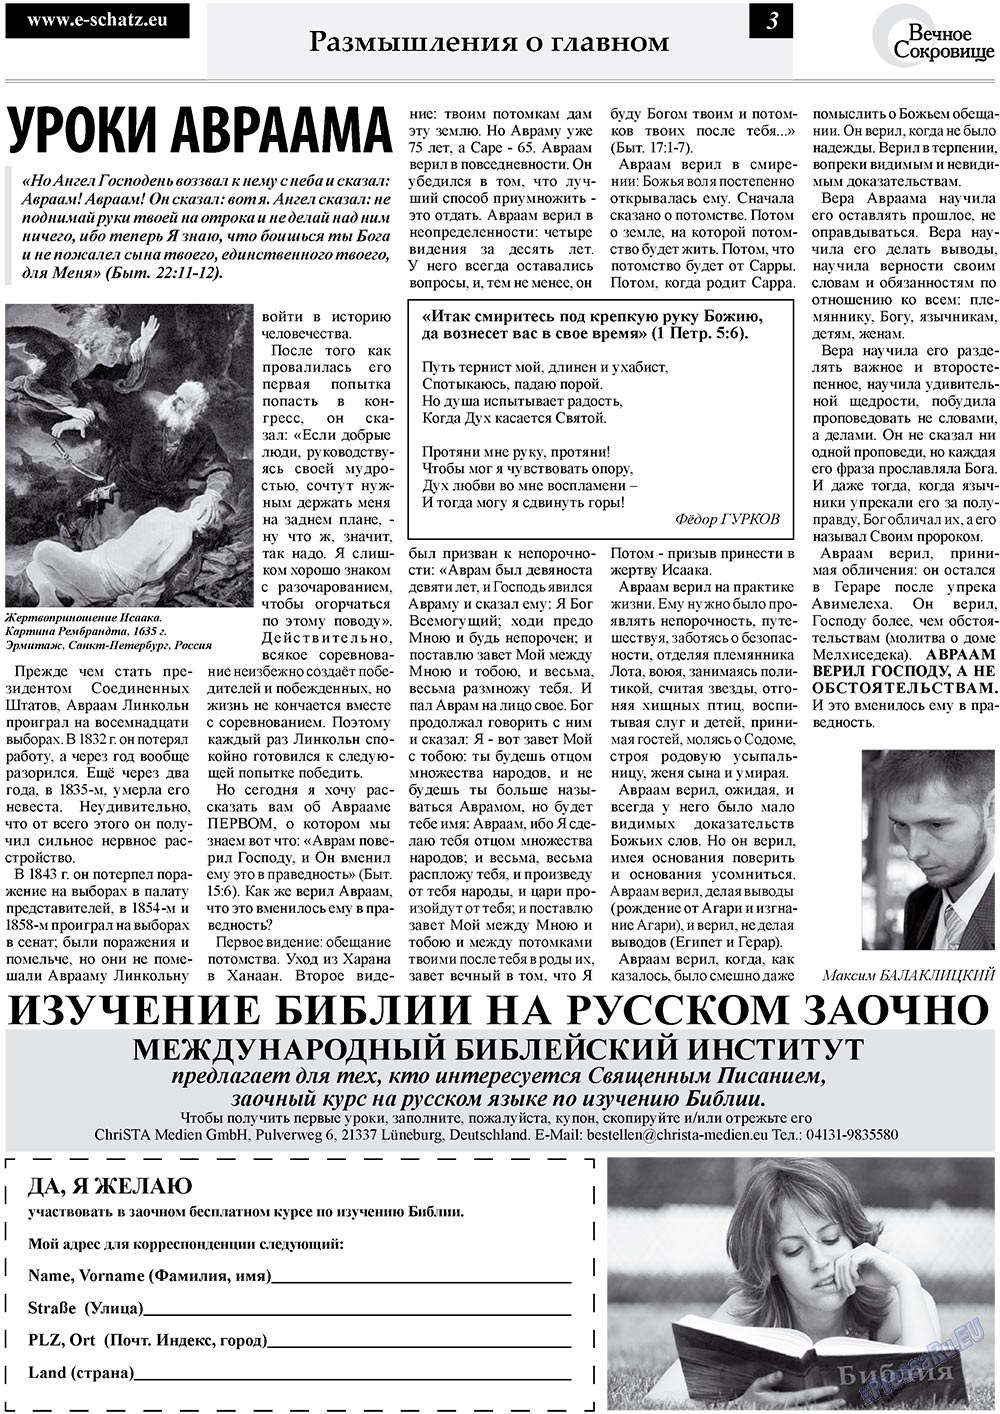 Вечное сокровище (газета). 2010 год, номер 3, стр. 3